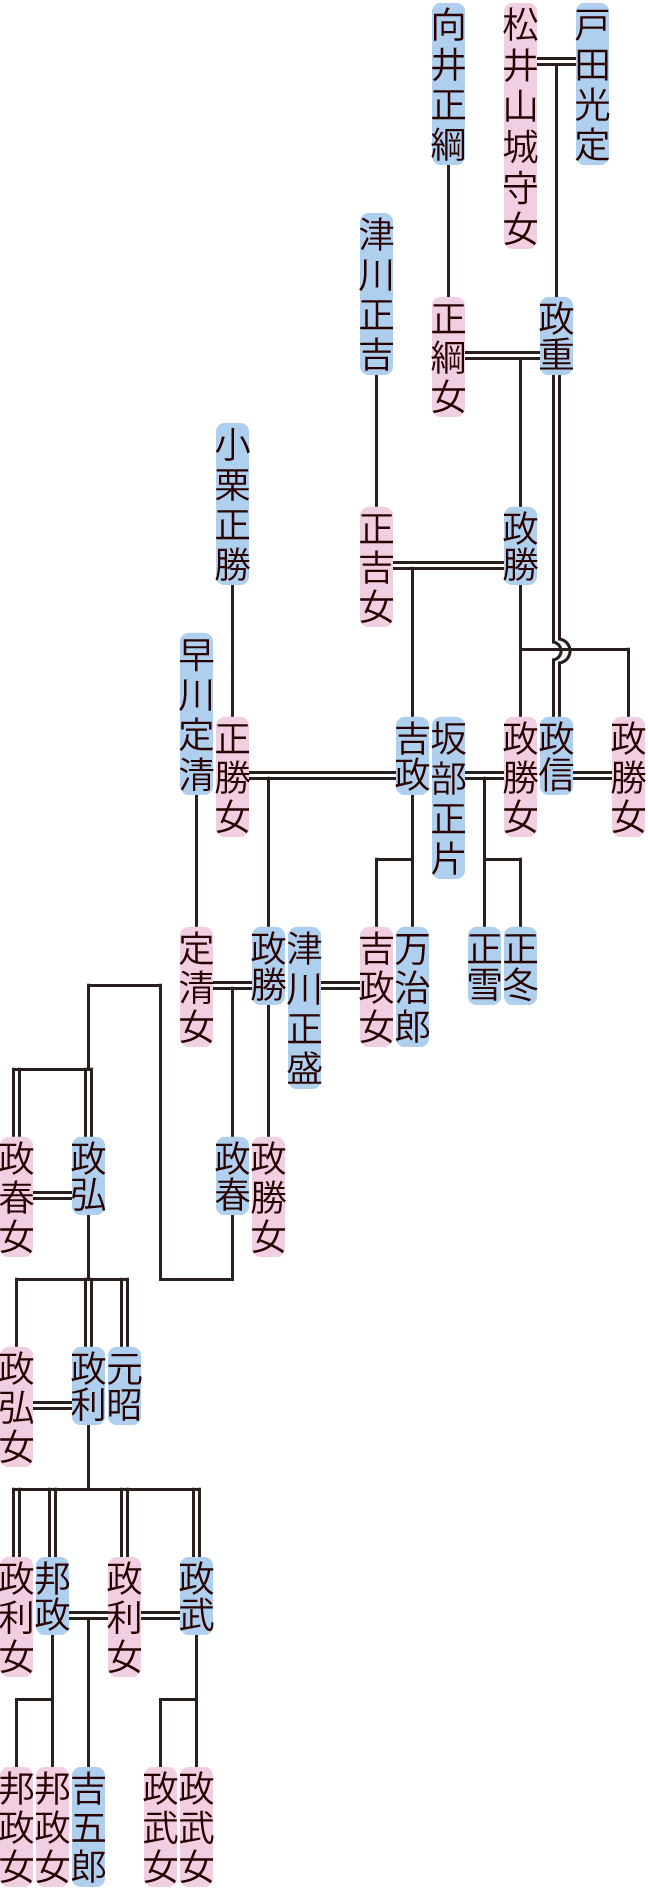 戸田政勝～邦政の系図